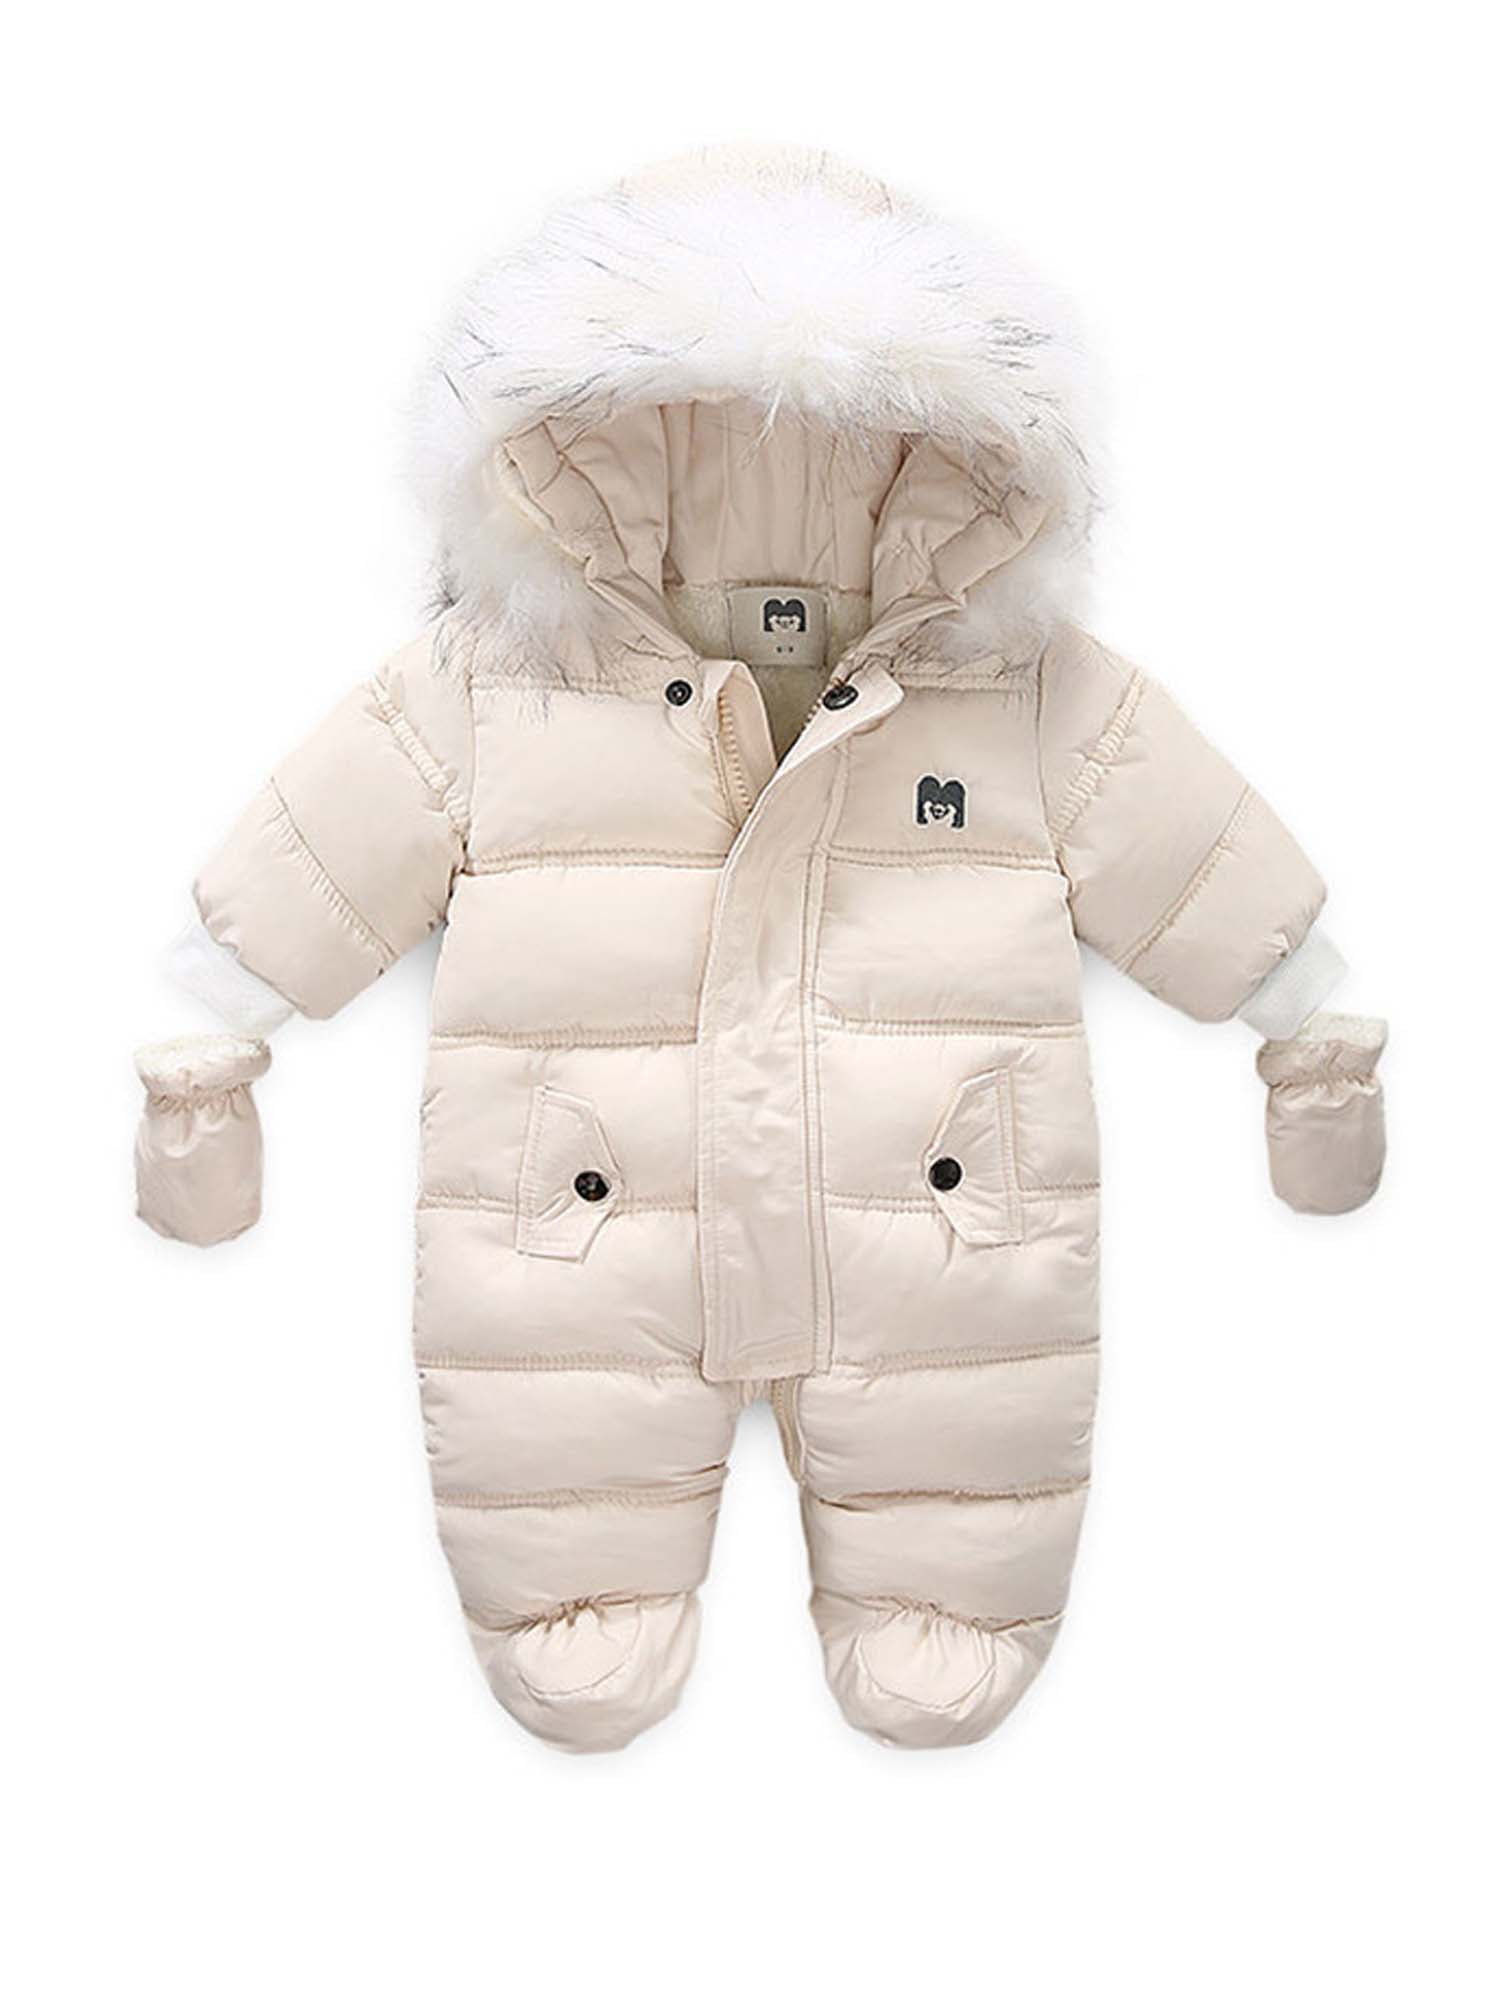 Baby Girls Boys Warmer Hooded Snowsuit Jumpsuit Down Coat Romper Outwear Jacket 